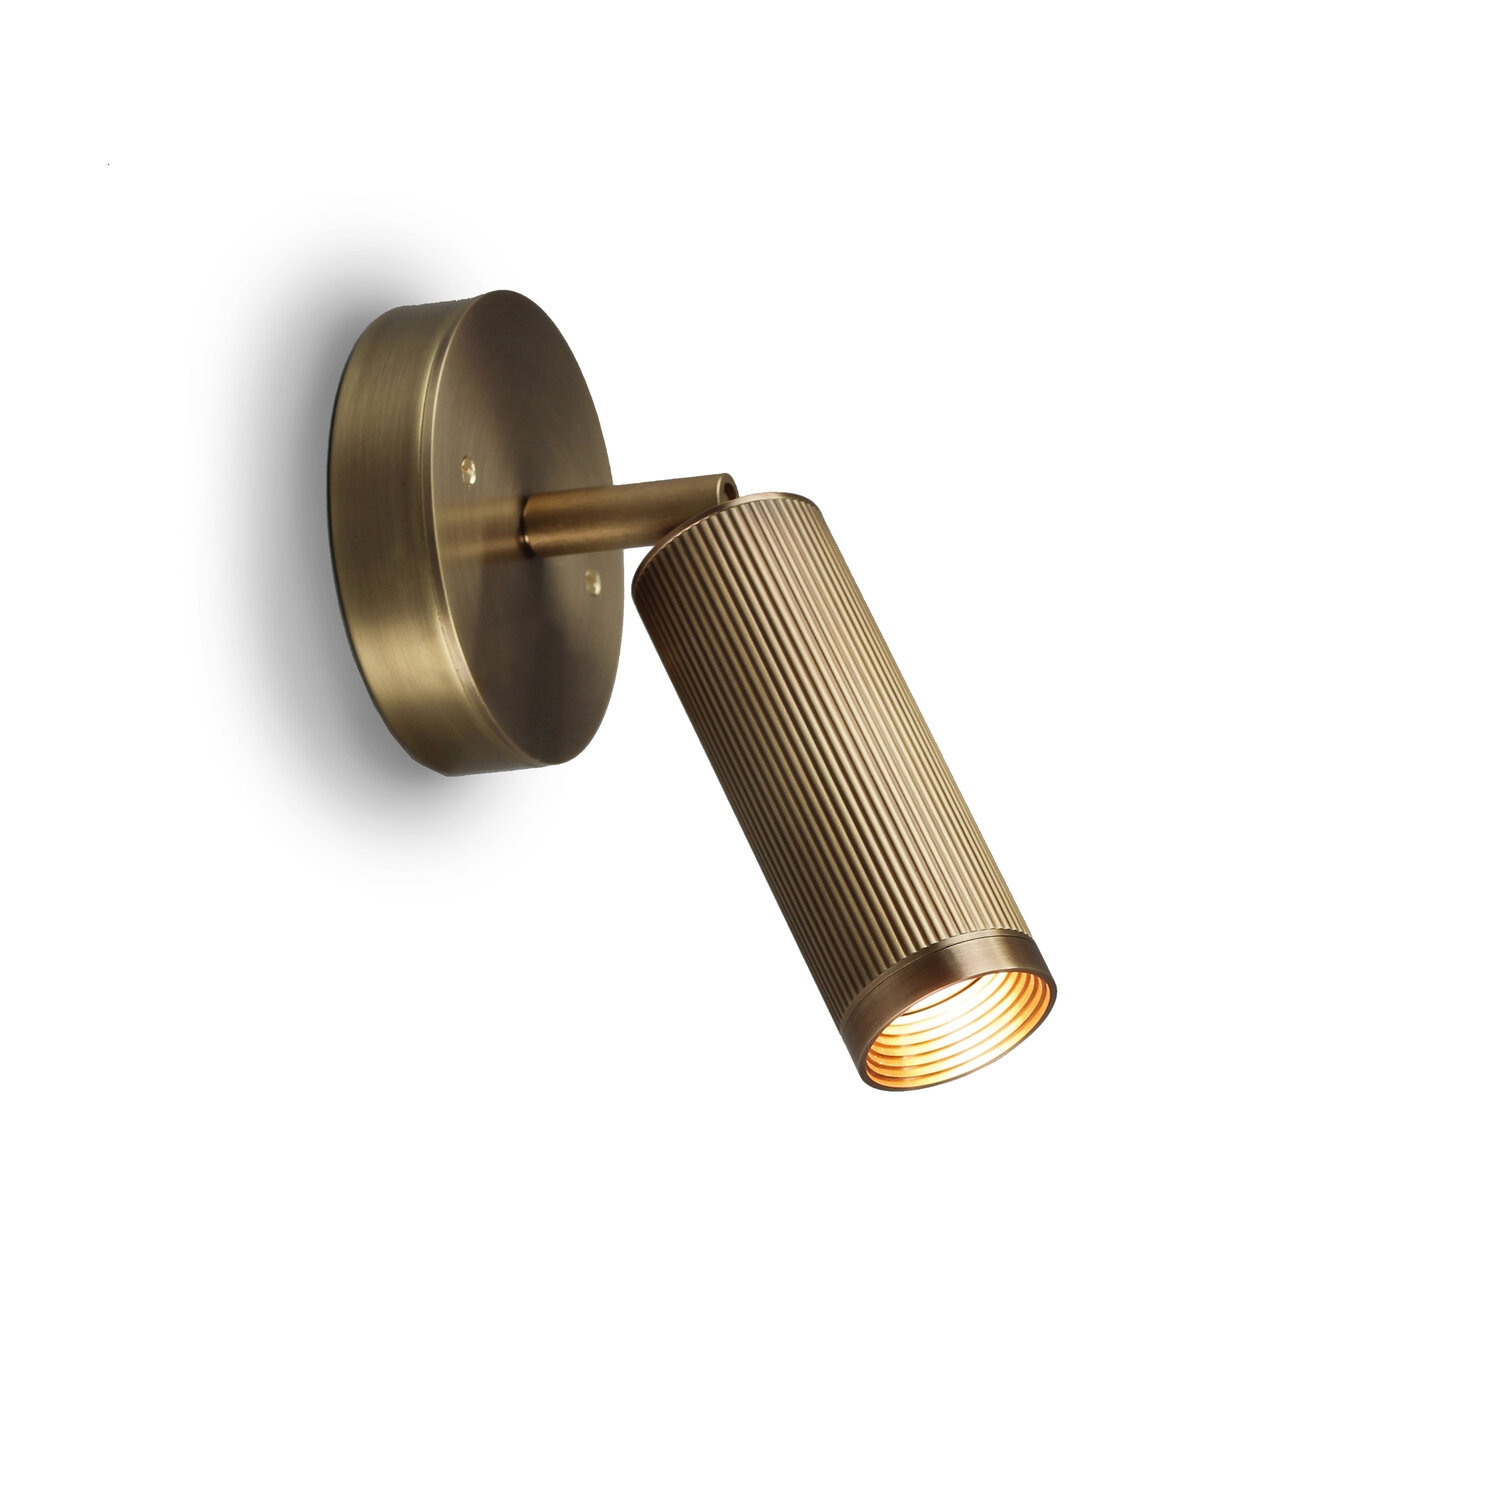 J Adams & Co – Spot Unswitched Wall Light Fixture – Brass Colour – Brass Material